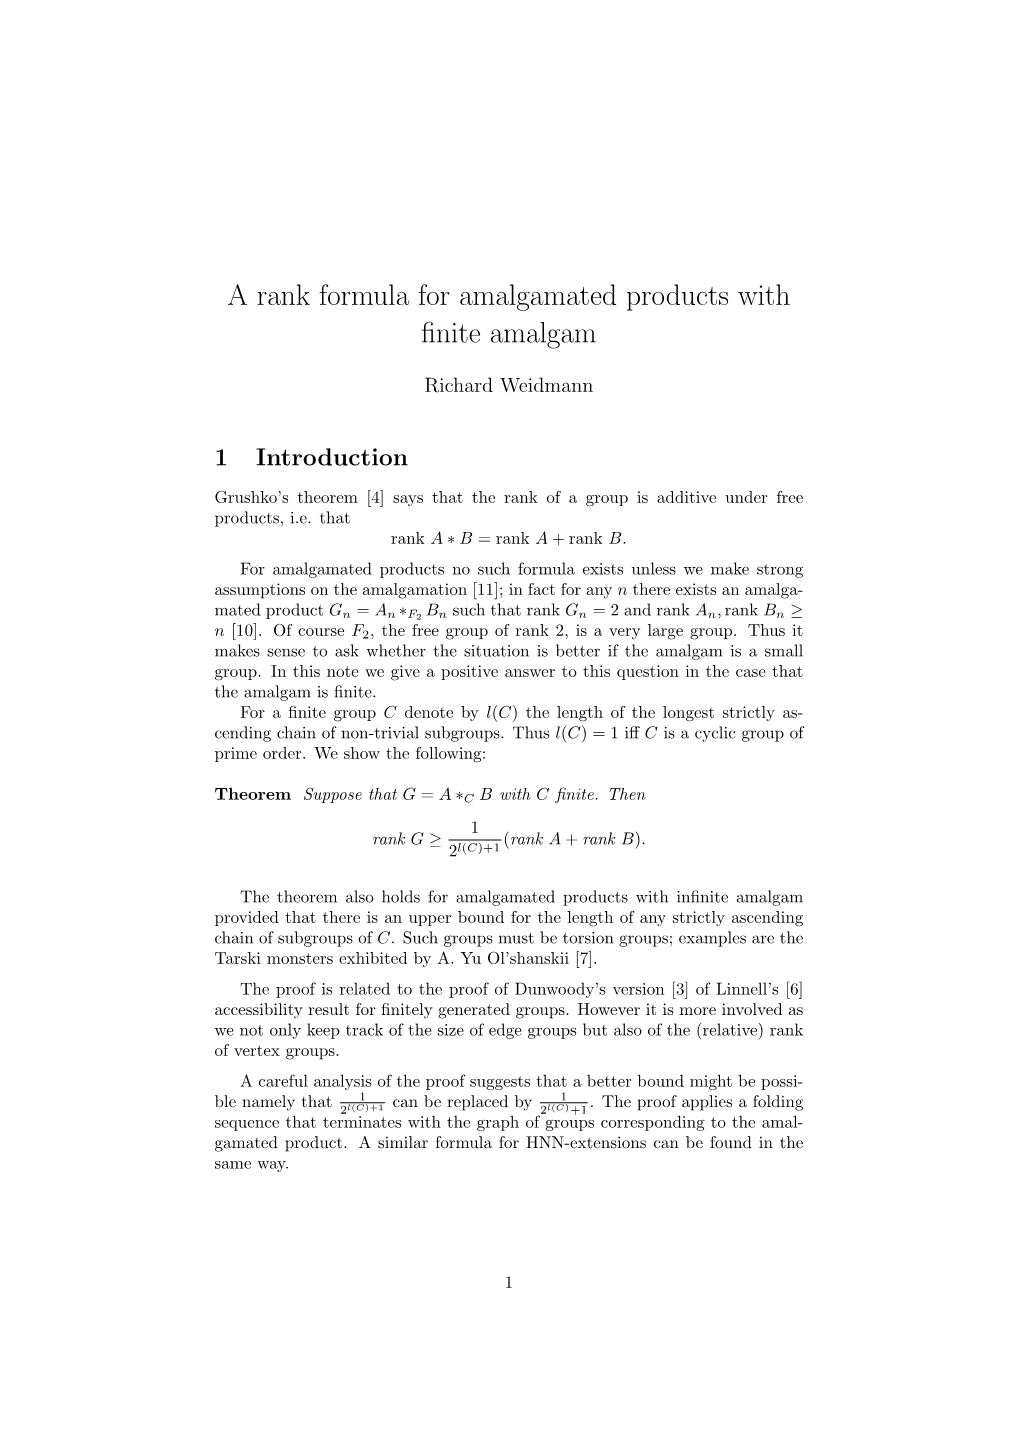 A Rank Formula for Amalgamated Products with Finite Amalgam